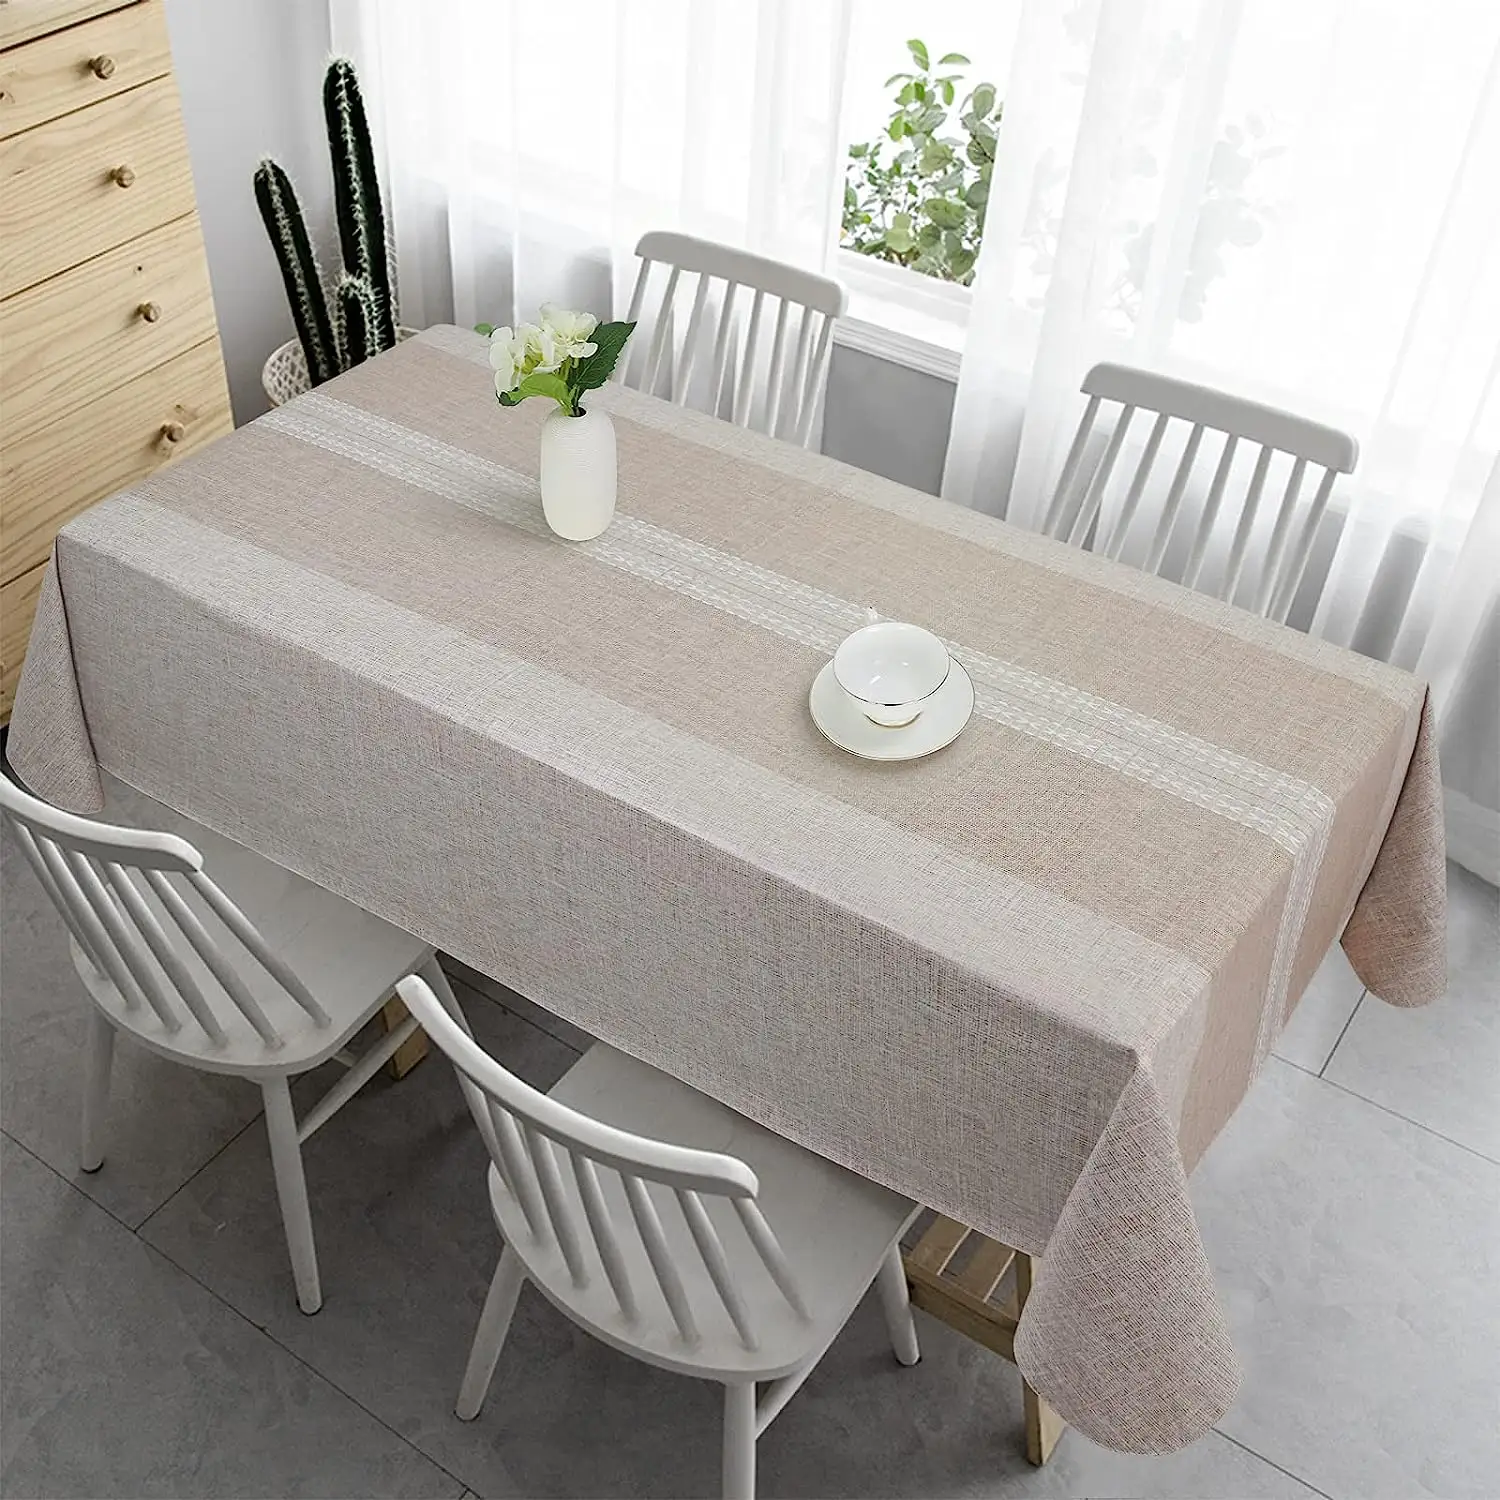 저렴한 레스토랑 씻어 면 테이블 천 직사각형 라운드 방수 내유 방진 테이블 옷